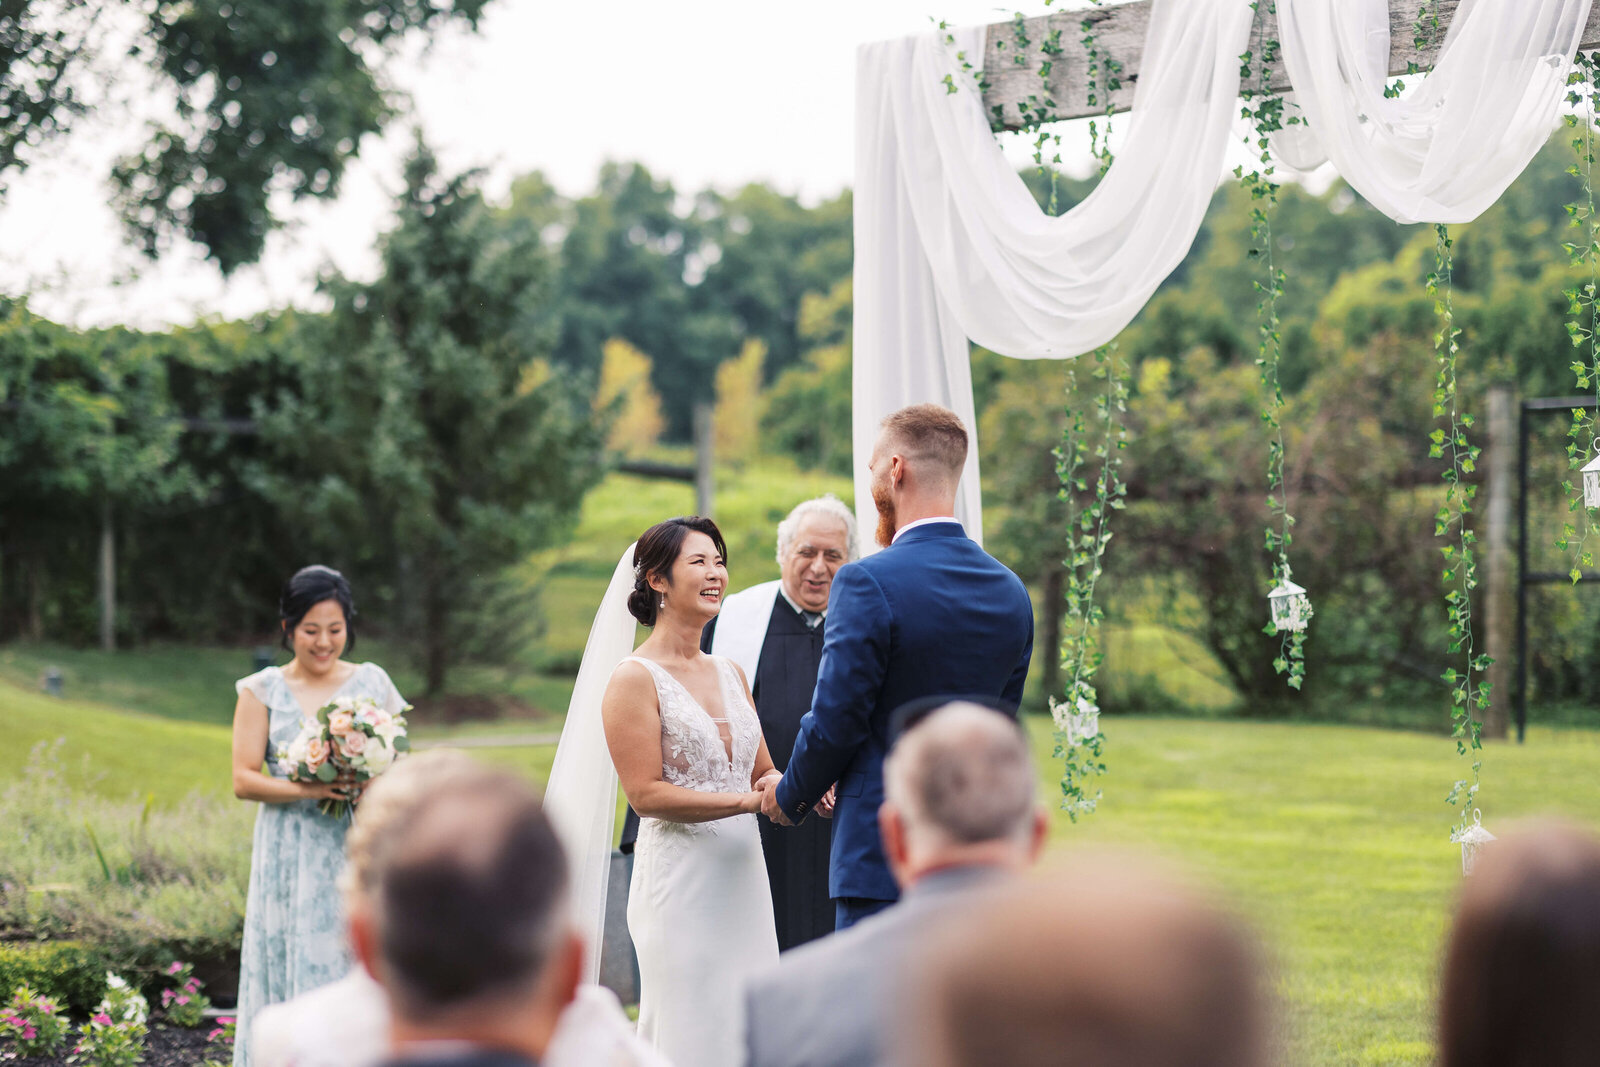 Outdoor wedding ceremony in New Jersey.